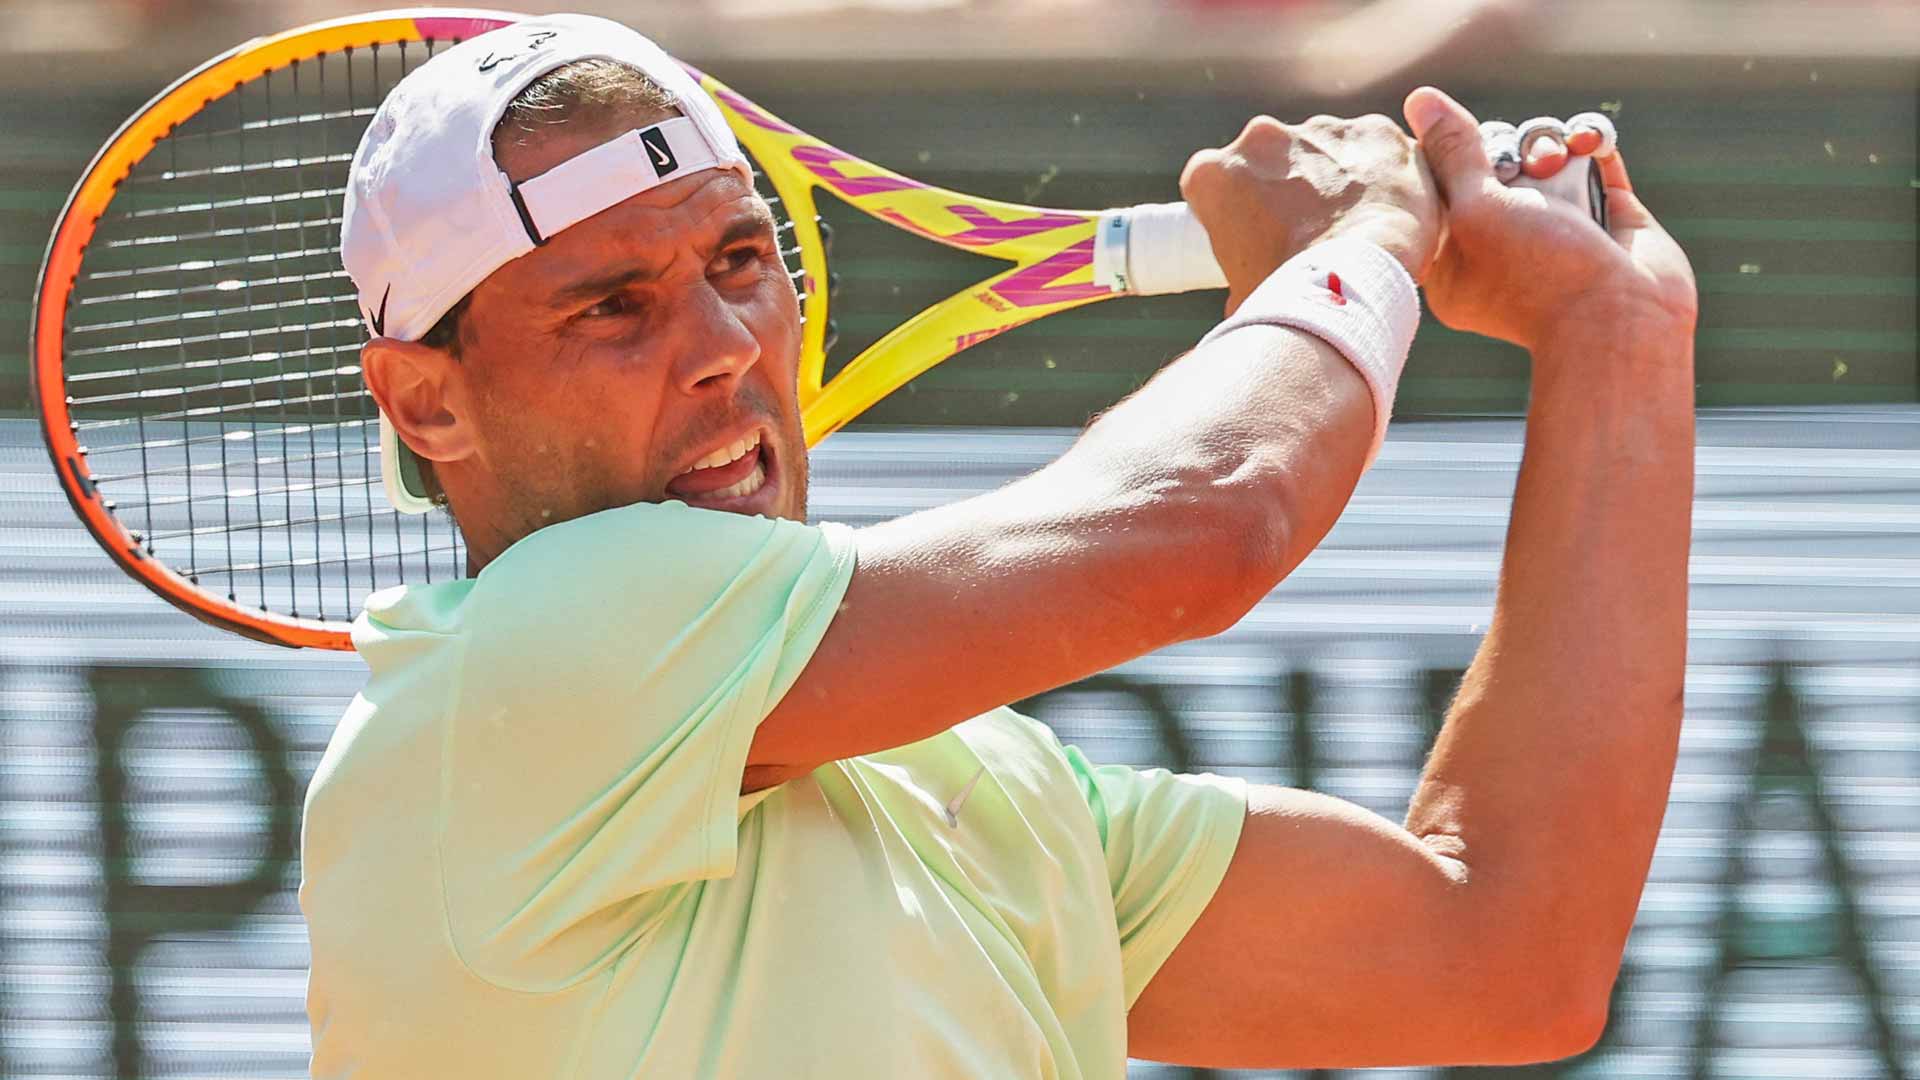 When will Nadal play Zverev at Roland Garros?